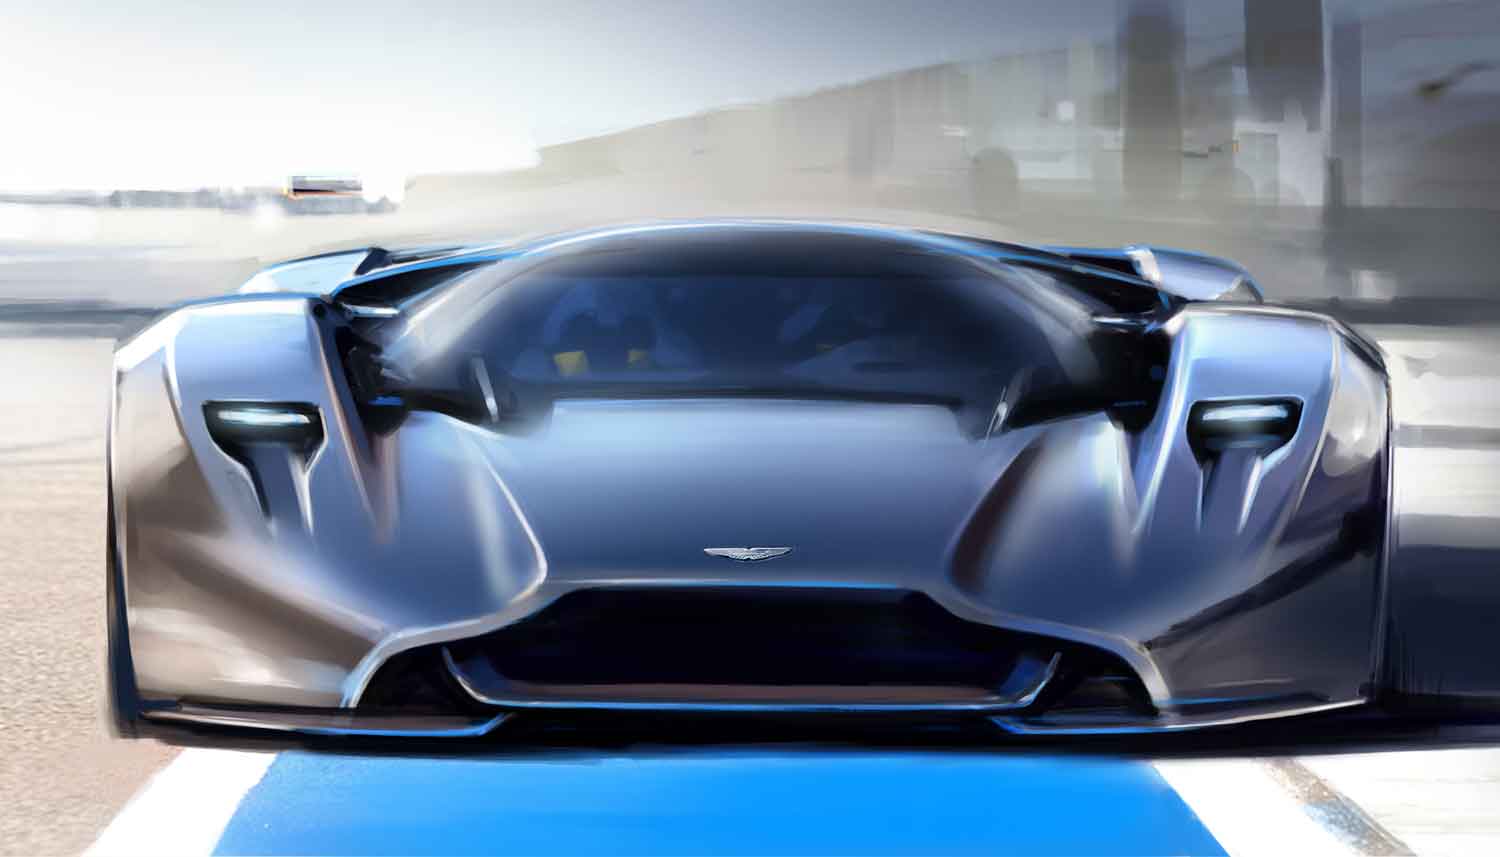 Aston Martin DP-100 HD wallpapers, Desktop wallpaper - most viewed